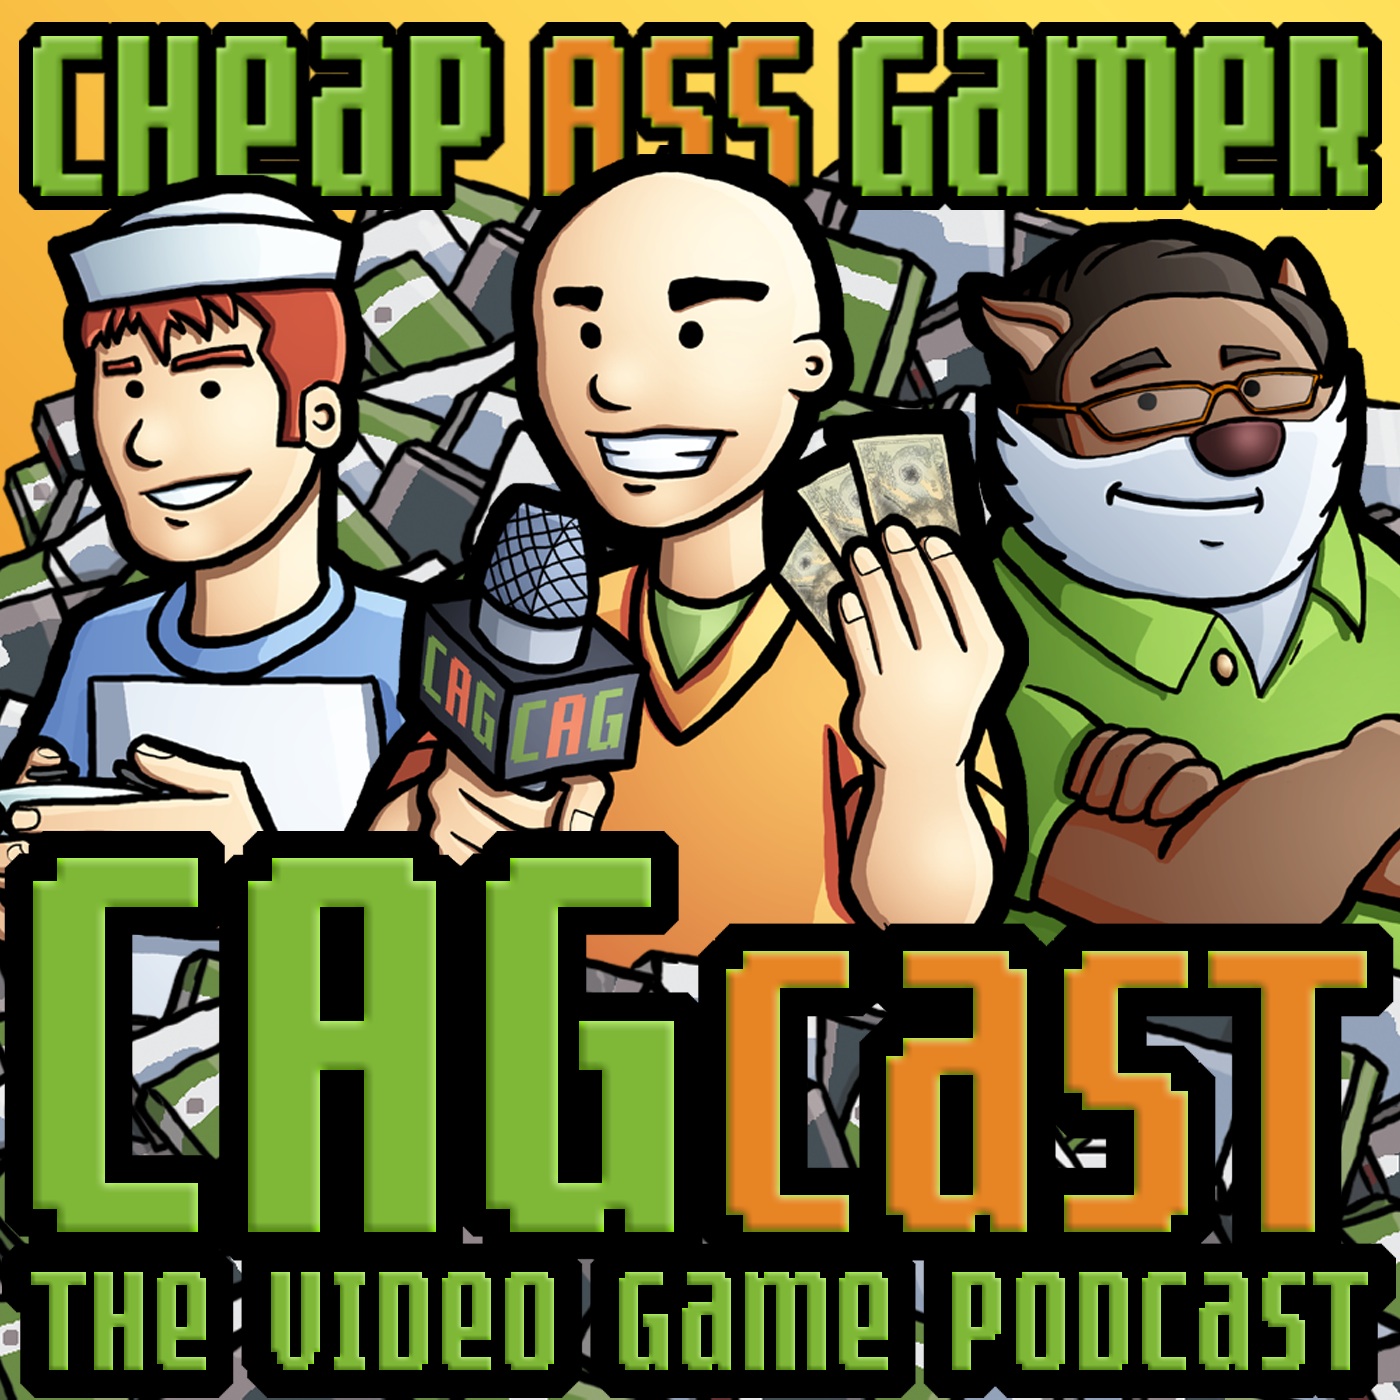 CAGcast Podcast artwork